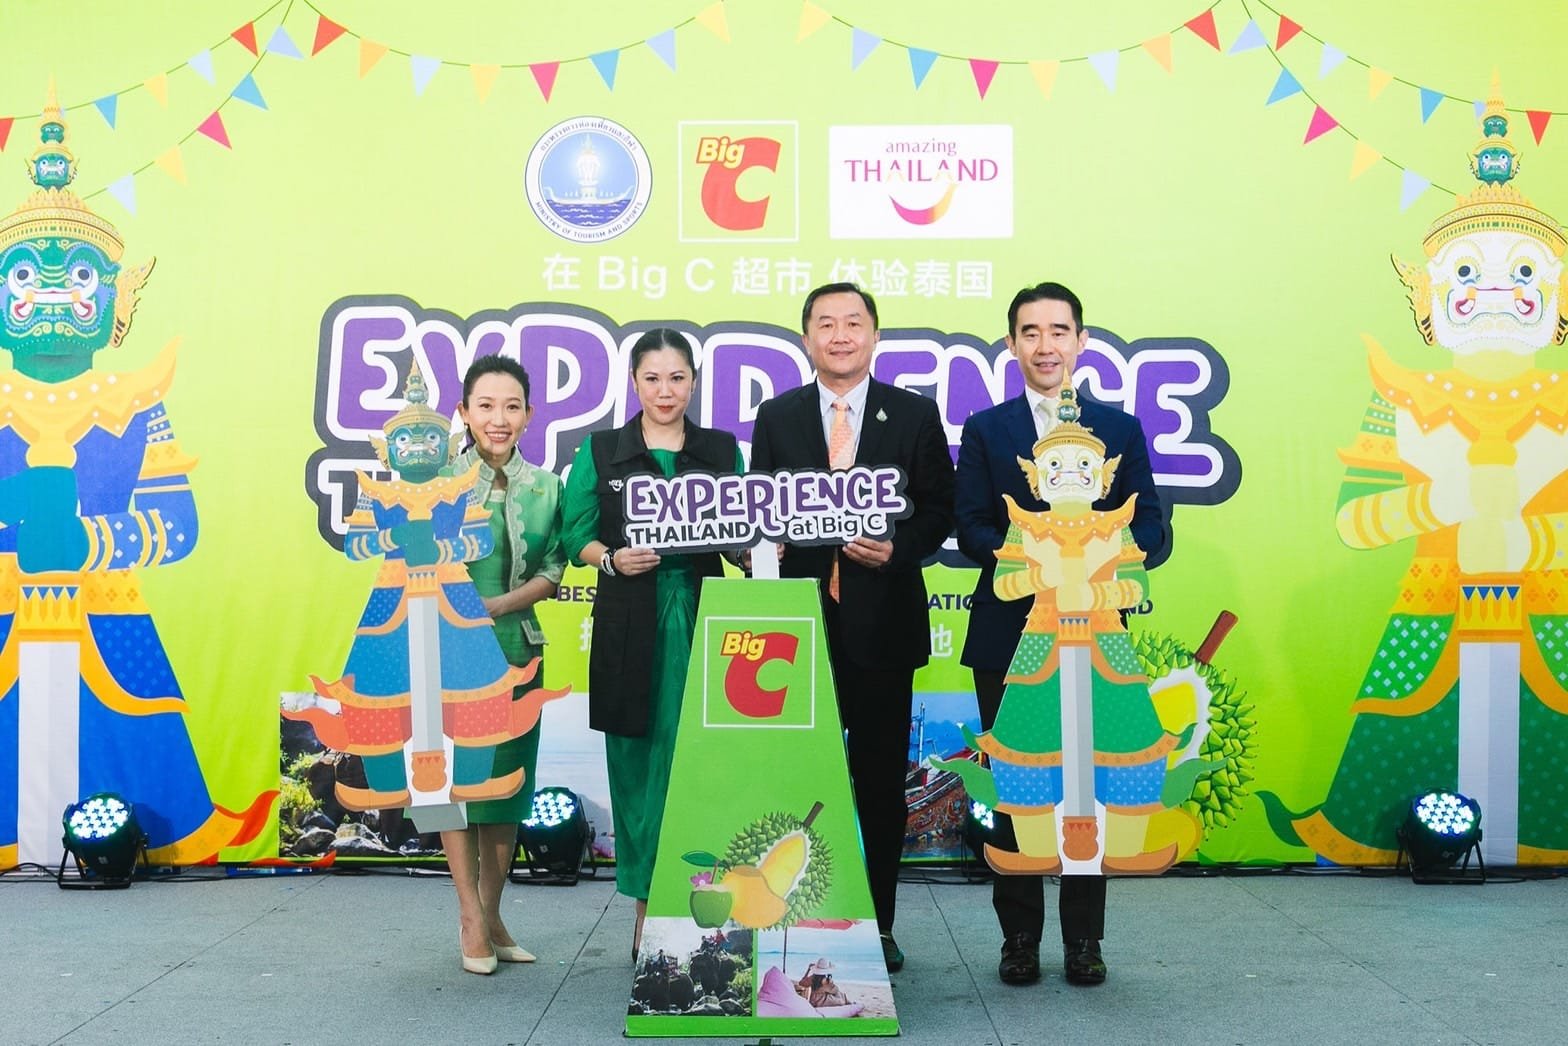 “บิ๊กซี” ตอกย้ำผู้นำ “ทัวร์ริส เดสติเนชัน” จัดงาน “Tourist Fair Experience Thailand at Big C” ต้อนรับนักท่องเที่ยวชาวต่างชาติและชาวไทย